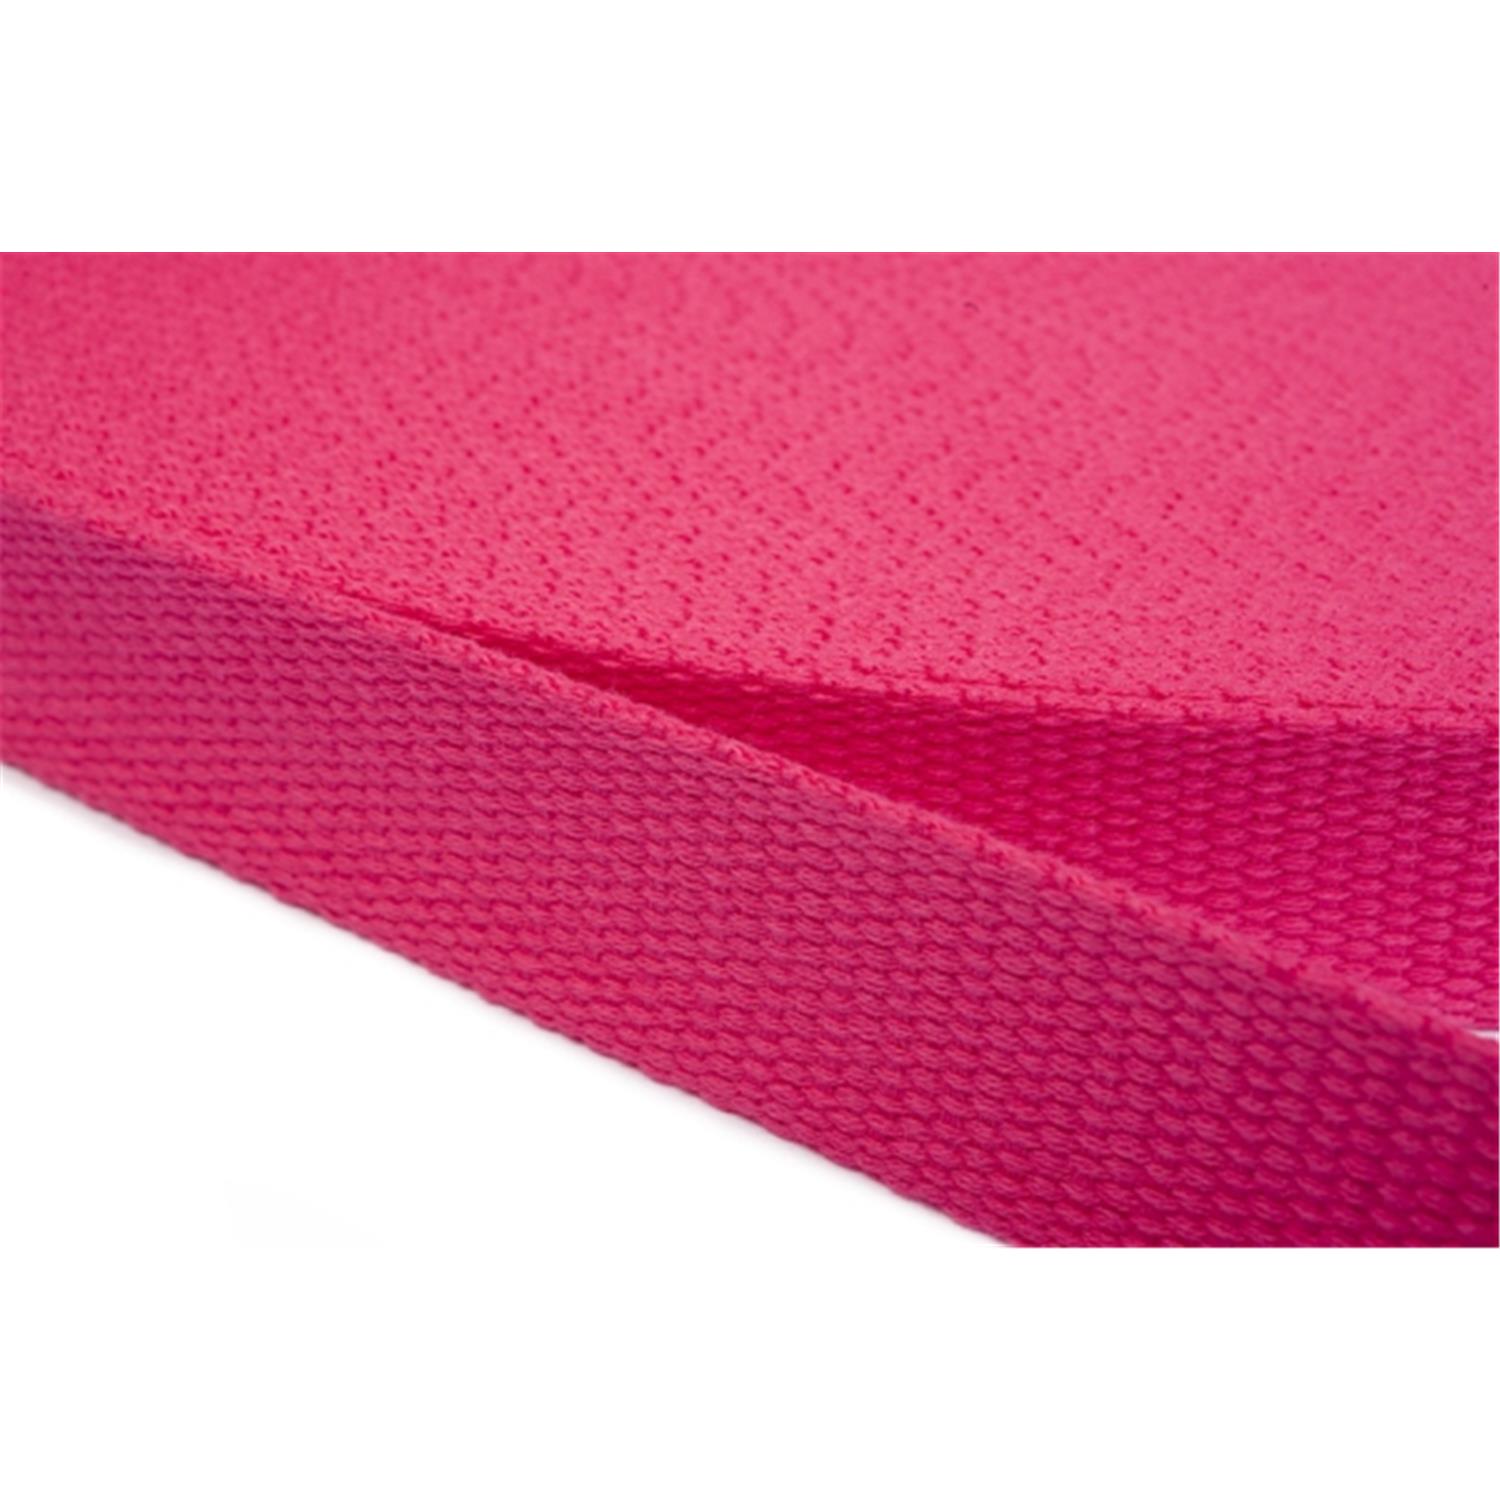 Gurtband aus Baumwolle 15mm in 20 Farben 07 - rosa/pink 12 Meter